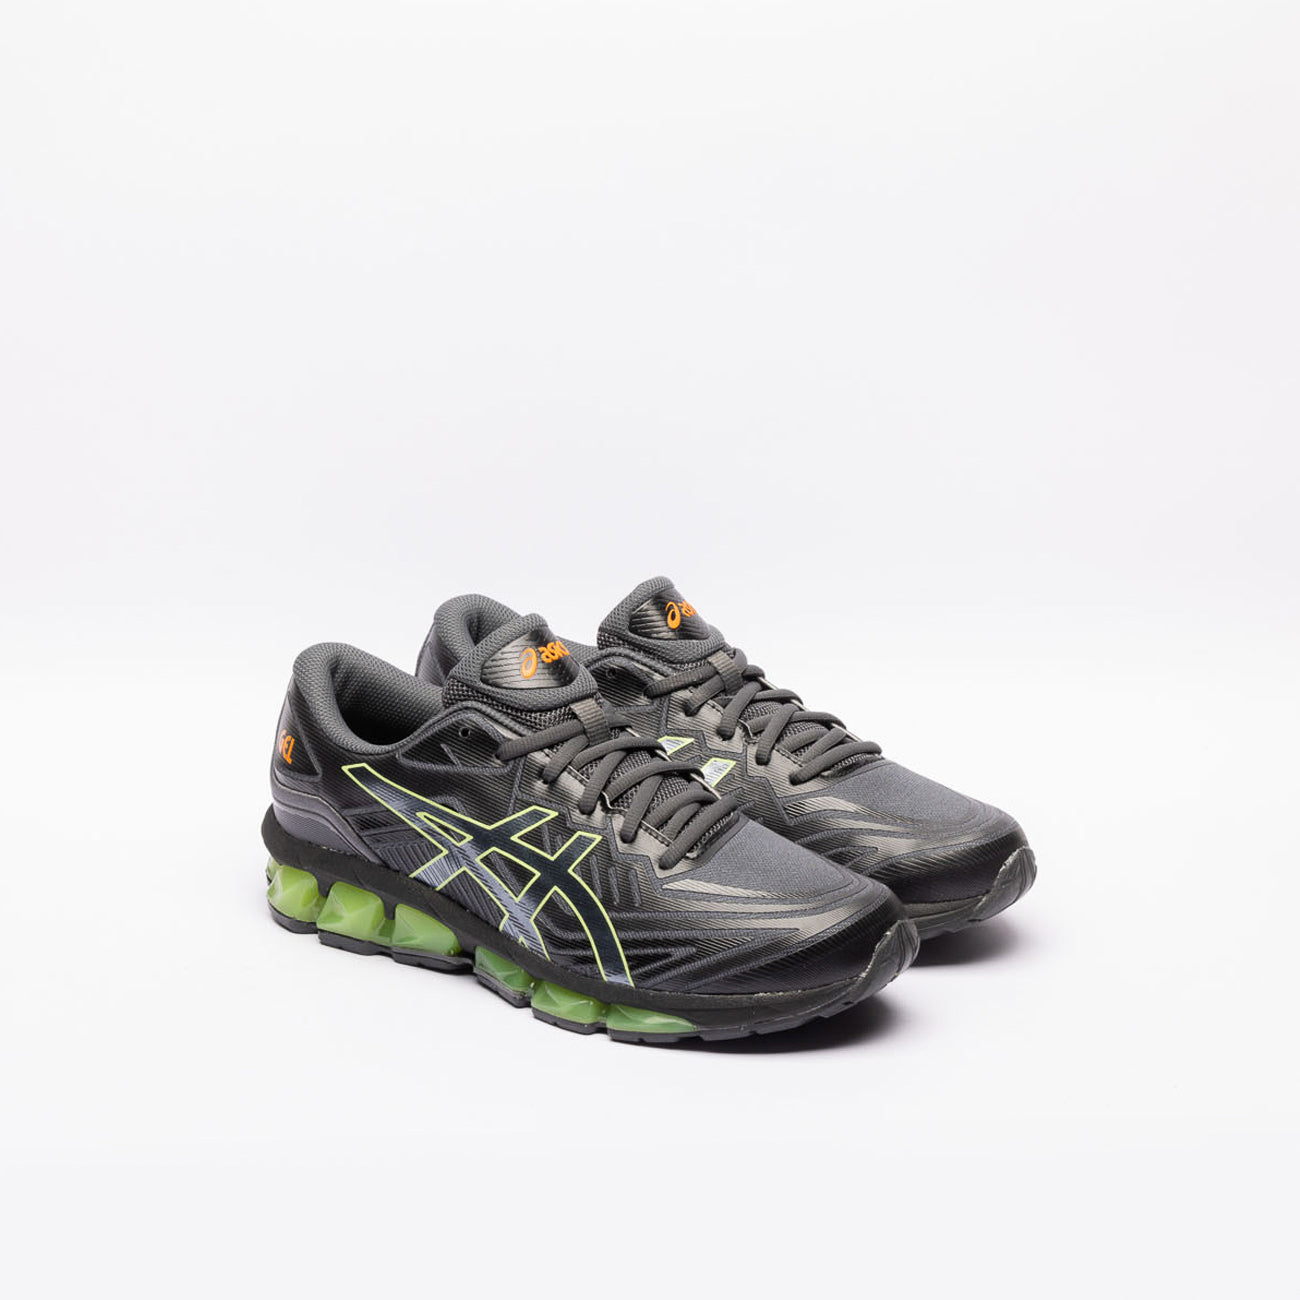 Sneaker running Asics Gel Quantum 360 VII in tessuto nero e gel verde lime